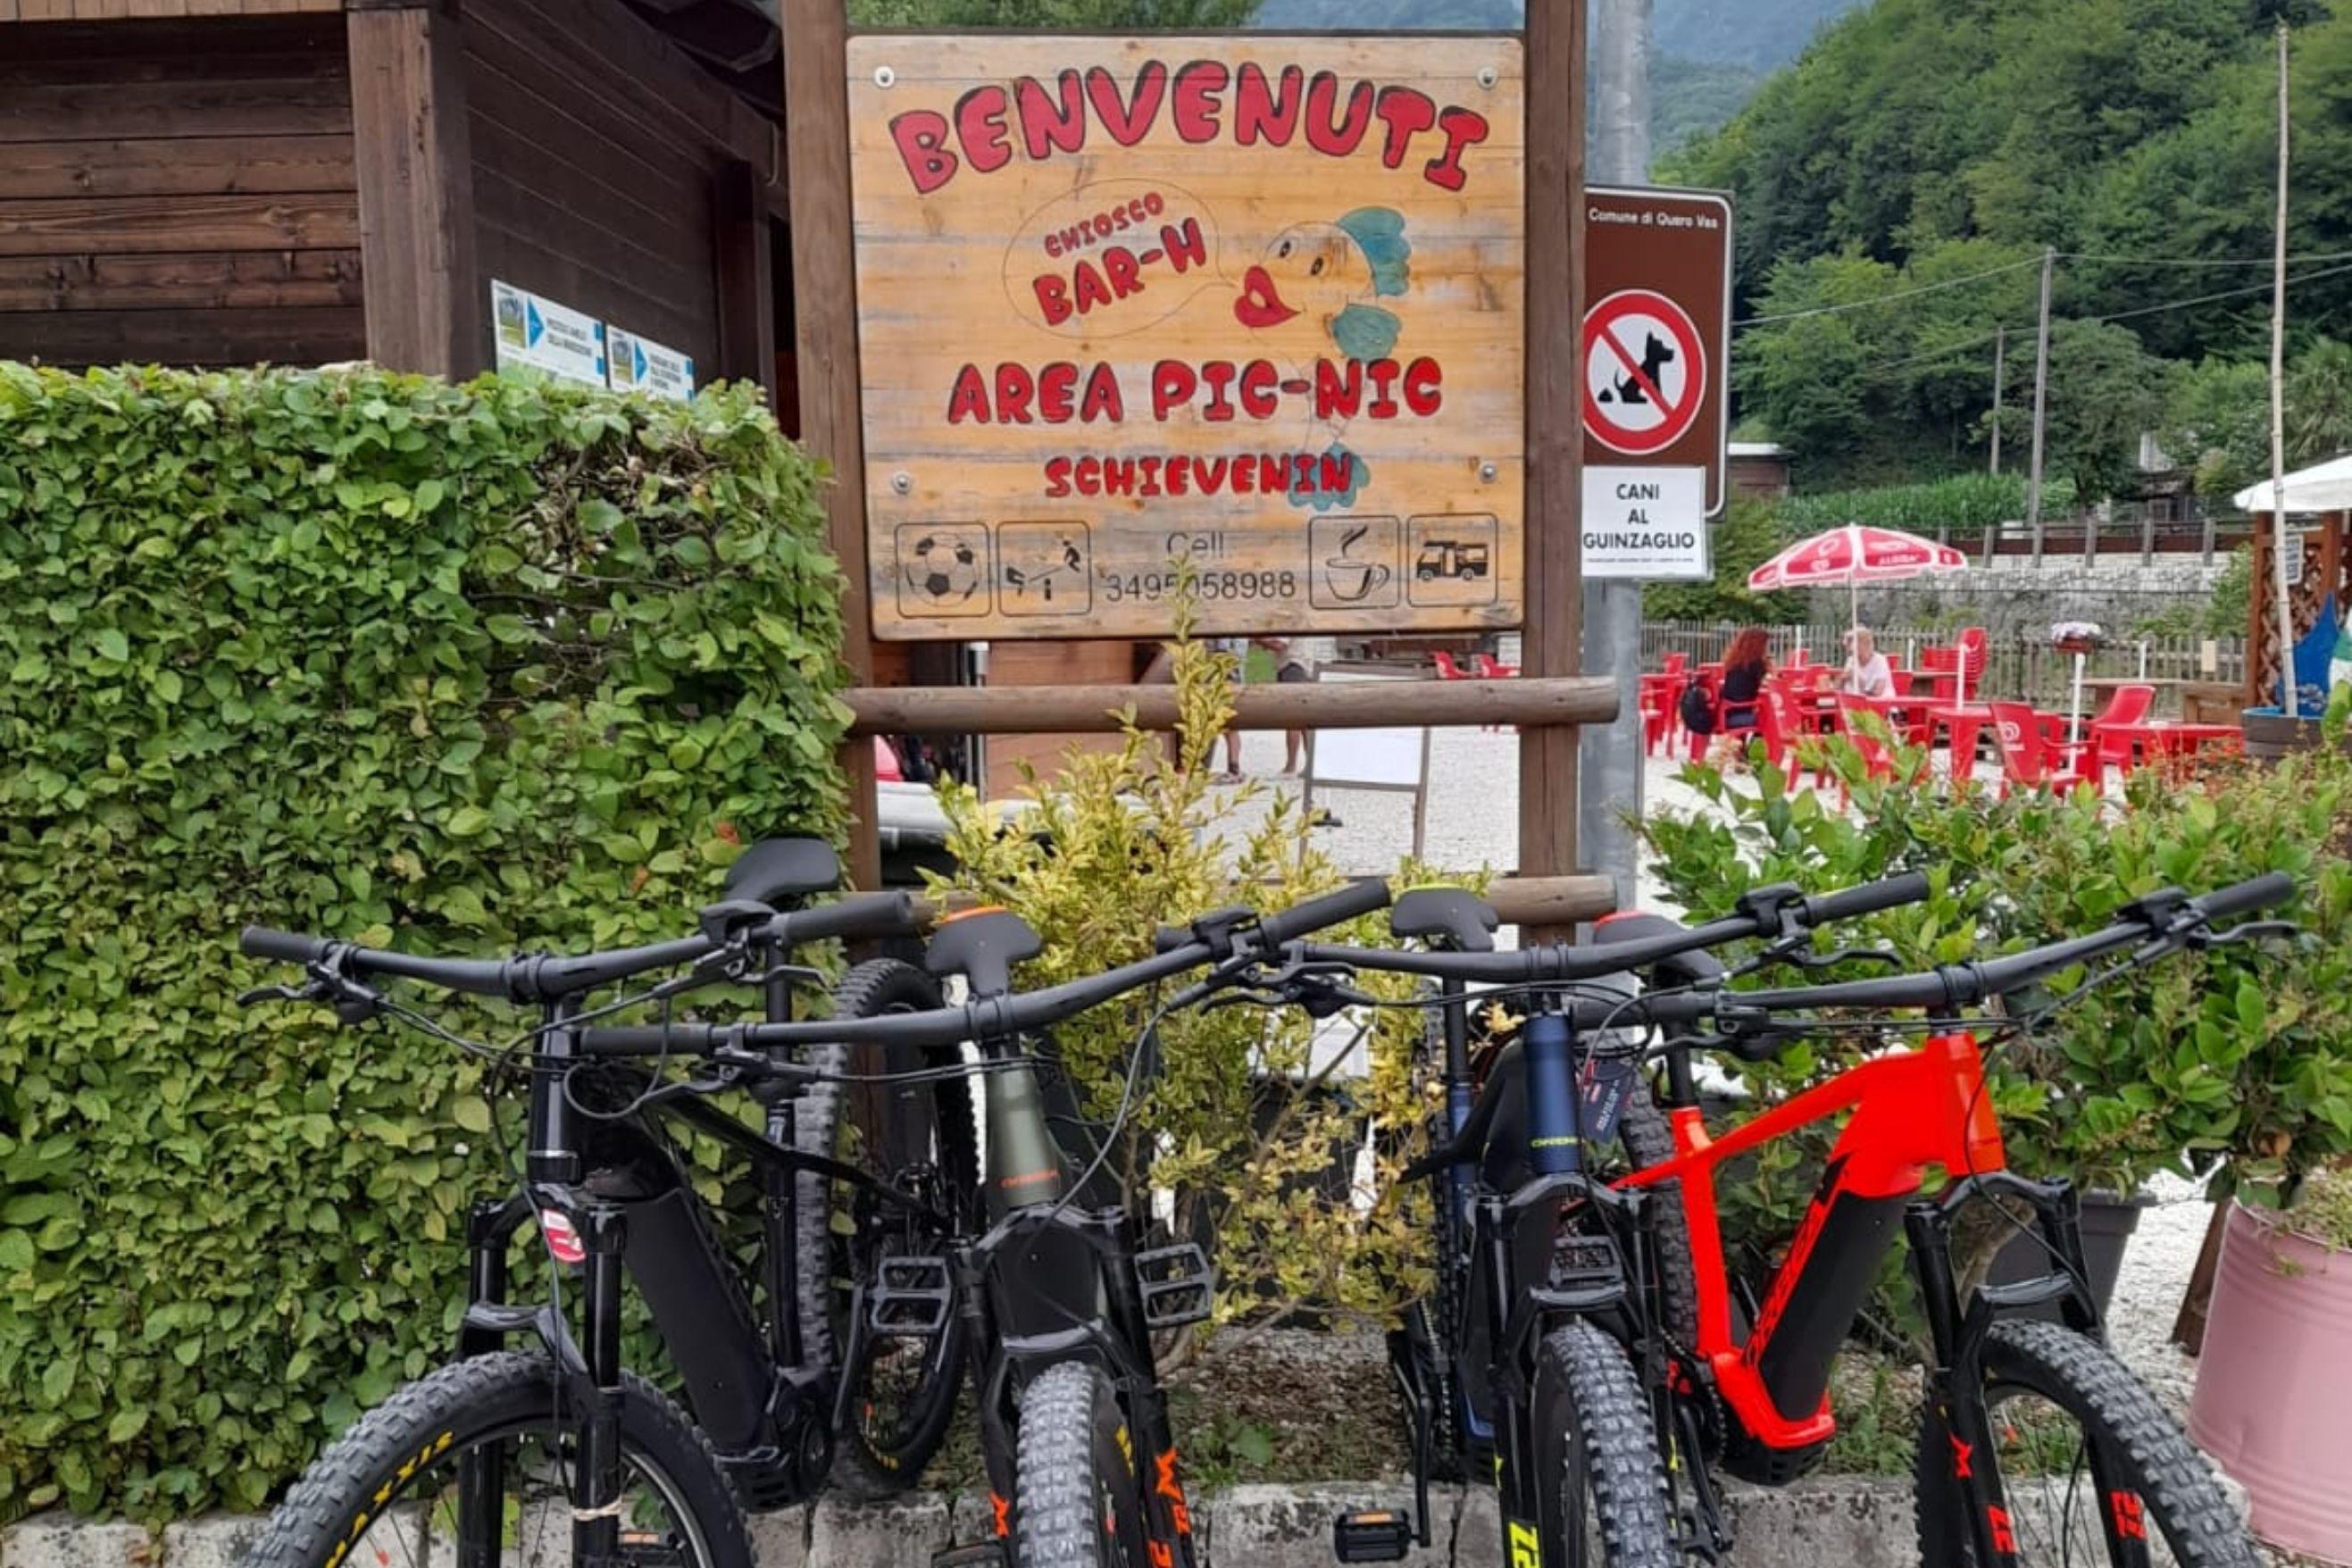 Noleggio bici Area pic-nic chiosco Valle di Schievenin